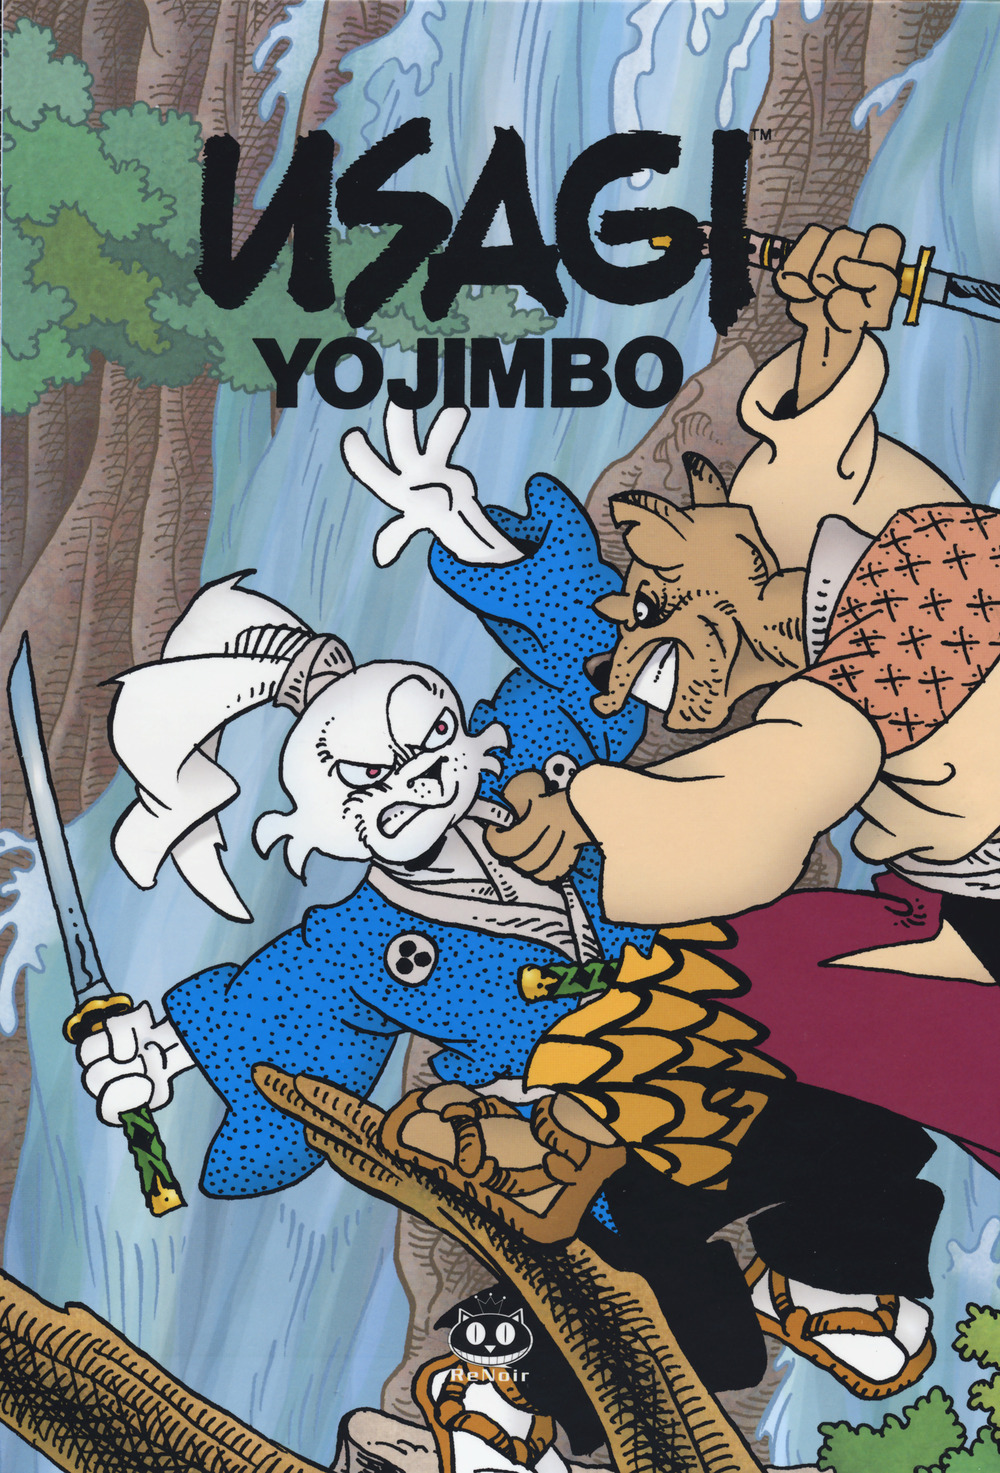 Libri Stan Sakai - Usagi Yojimbo Vol 7-8 NUOVO SIGILLATO, EDIZIONE DEL 17/11/2021 SUBITO DISPONIBILE